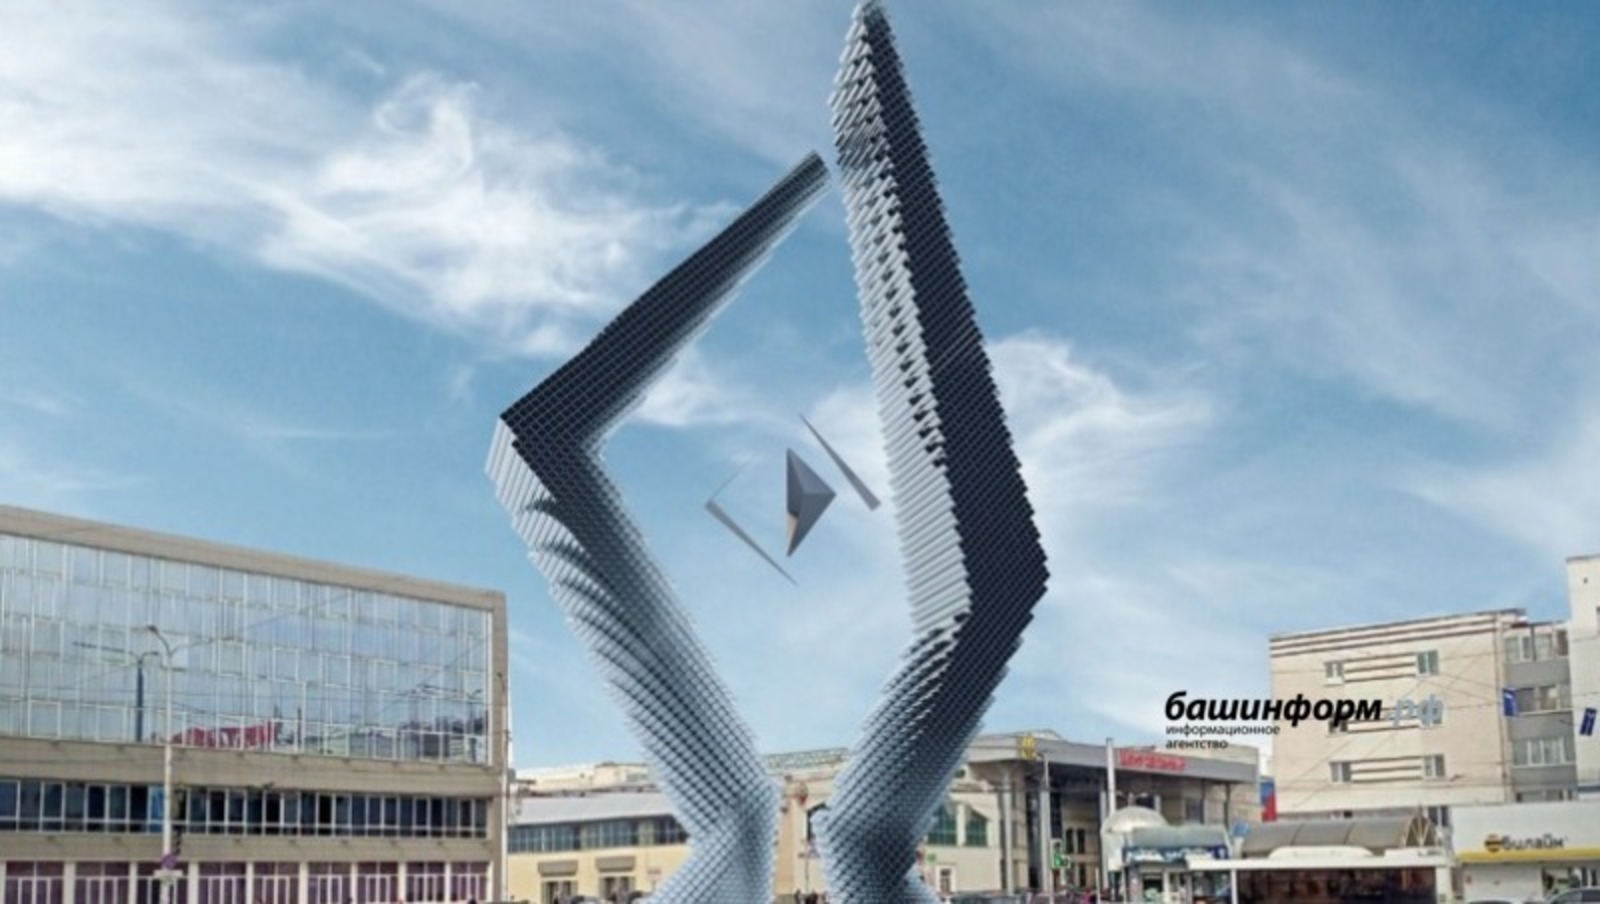 В столице Башкирии у Центрального рынка будет воздвигнут арт-объект, который выберет жюри конкурса